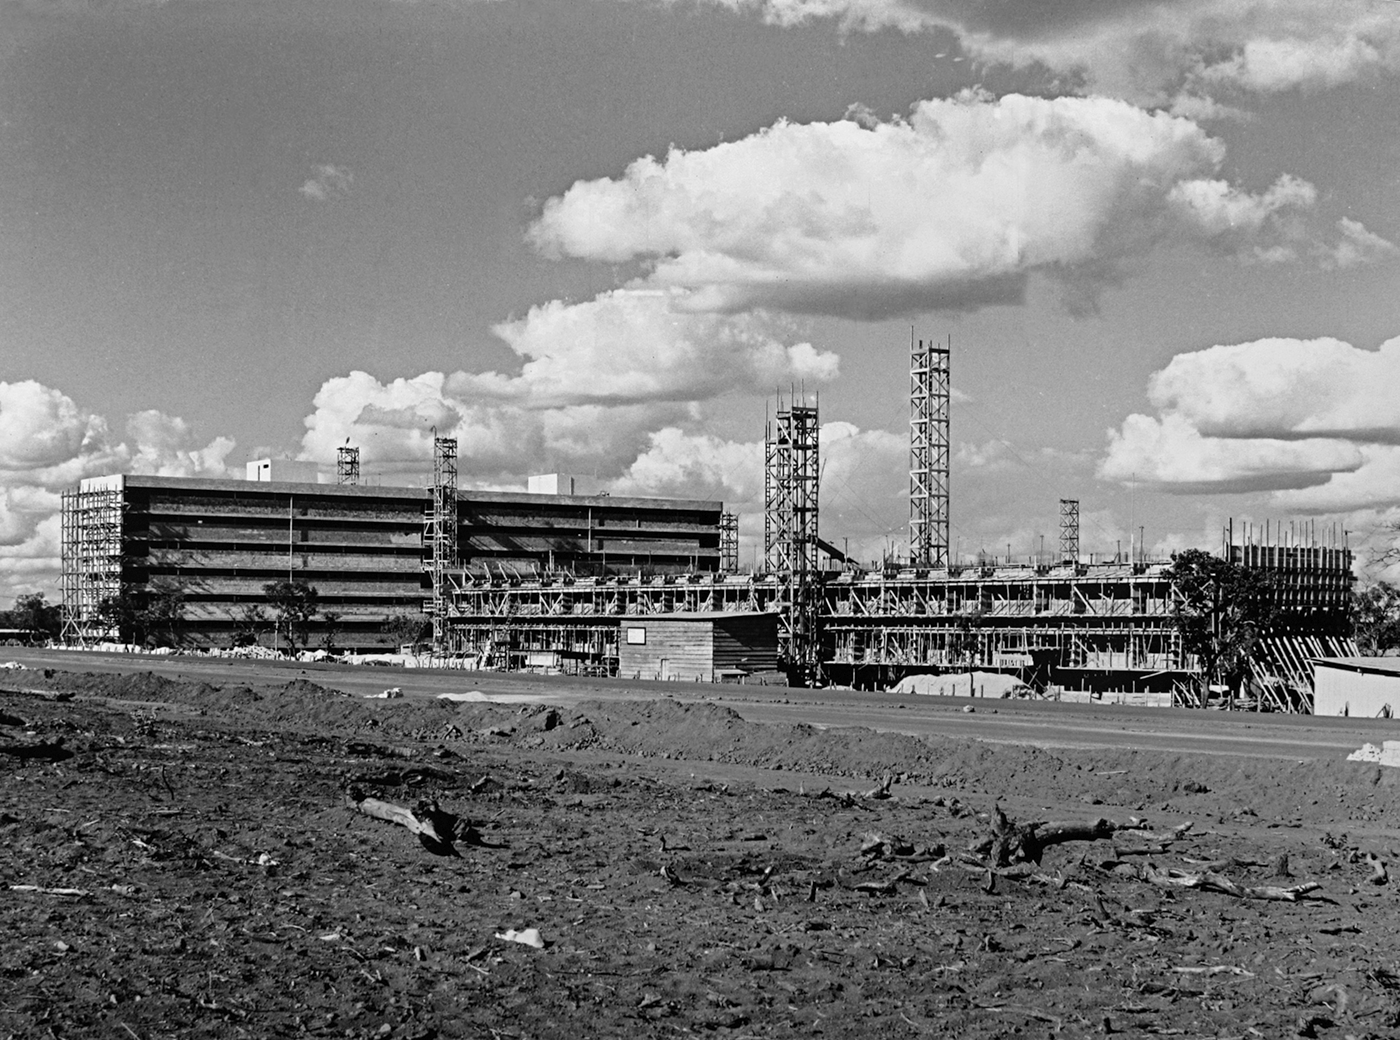 Fotografia em preto e branco. Prédios com andaimes e estruturas de ferro em frente a eles. No primeiro plano há um campo aberto.